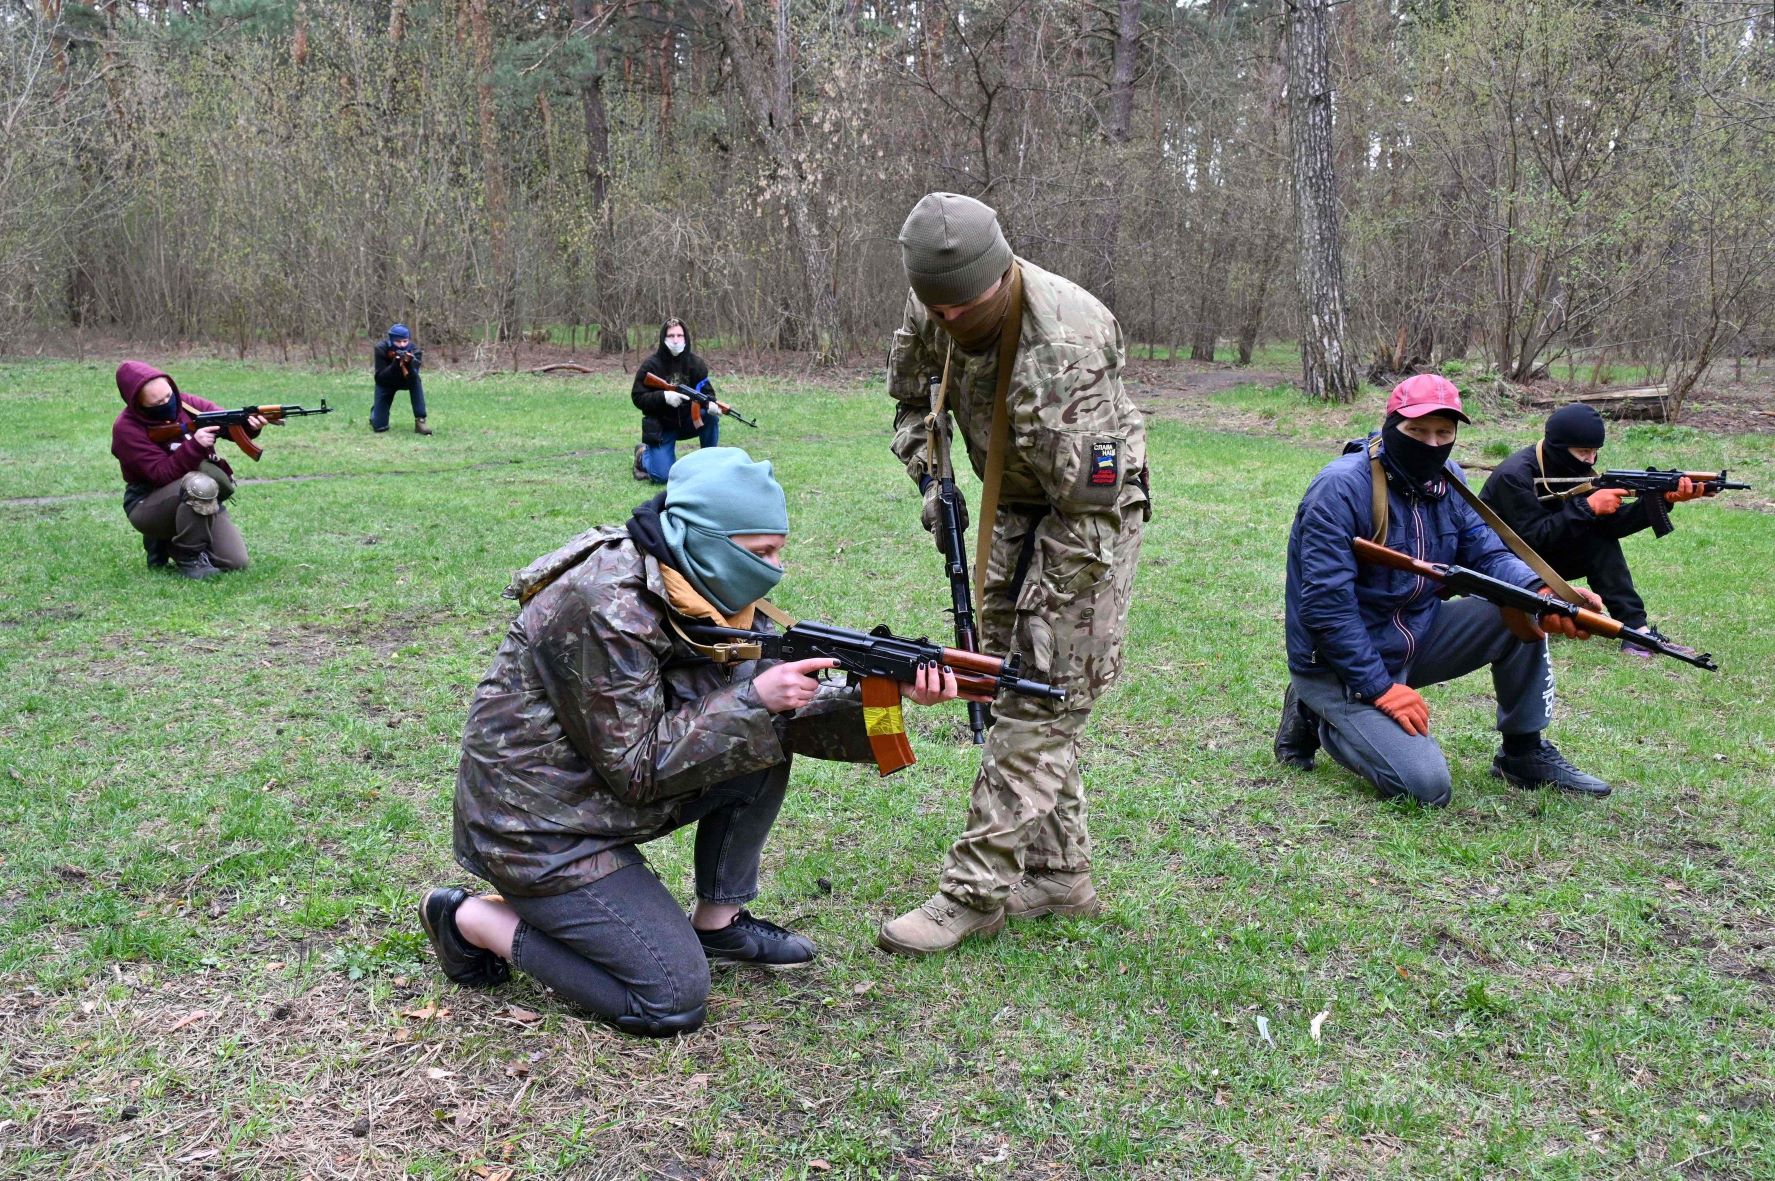 أشخاص يتدربون على القتال في مركز للتجنيد تابع للقوات المسلحة الأوكرانية في مدينة "خاركيف" بتاريخ 14 إبريل 2022